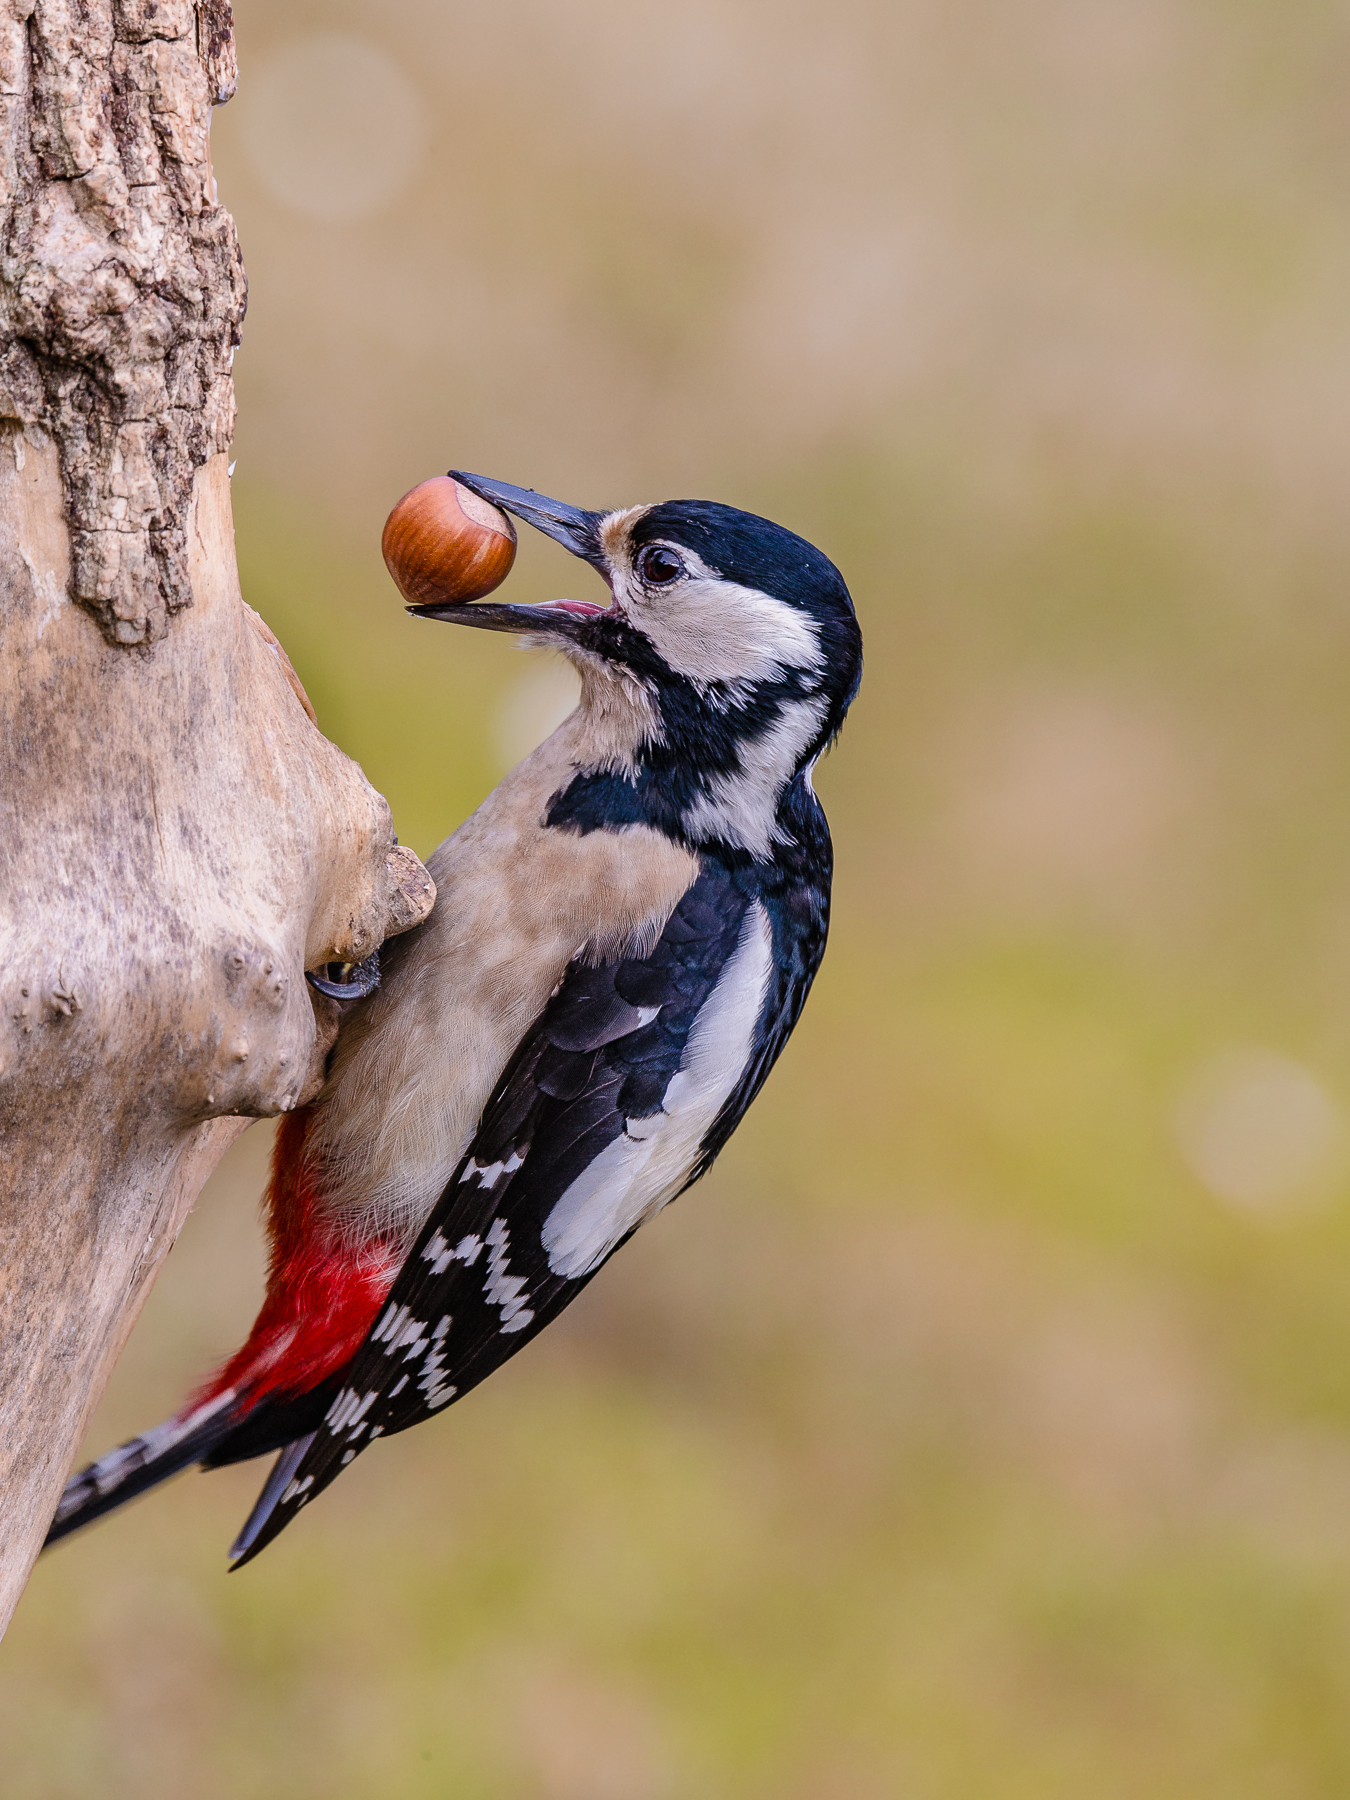 Woodpecker in the garden!...